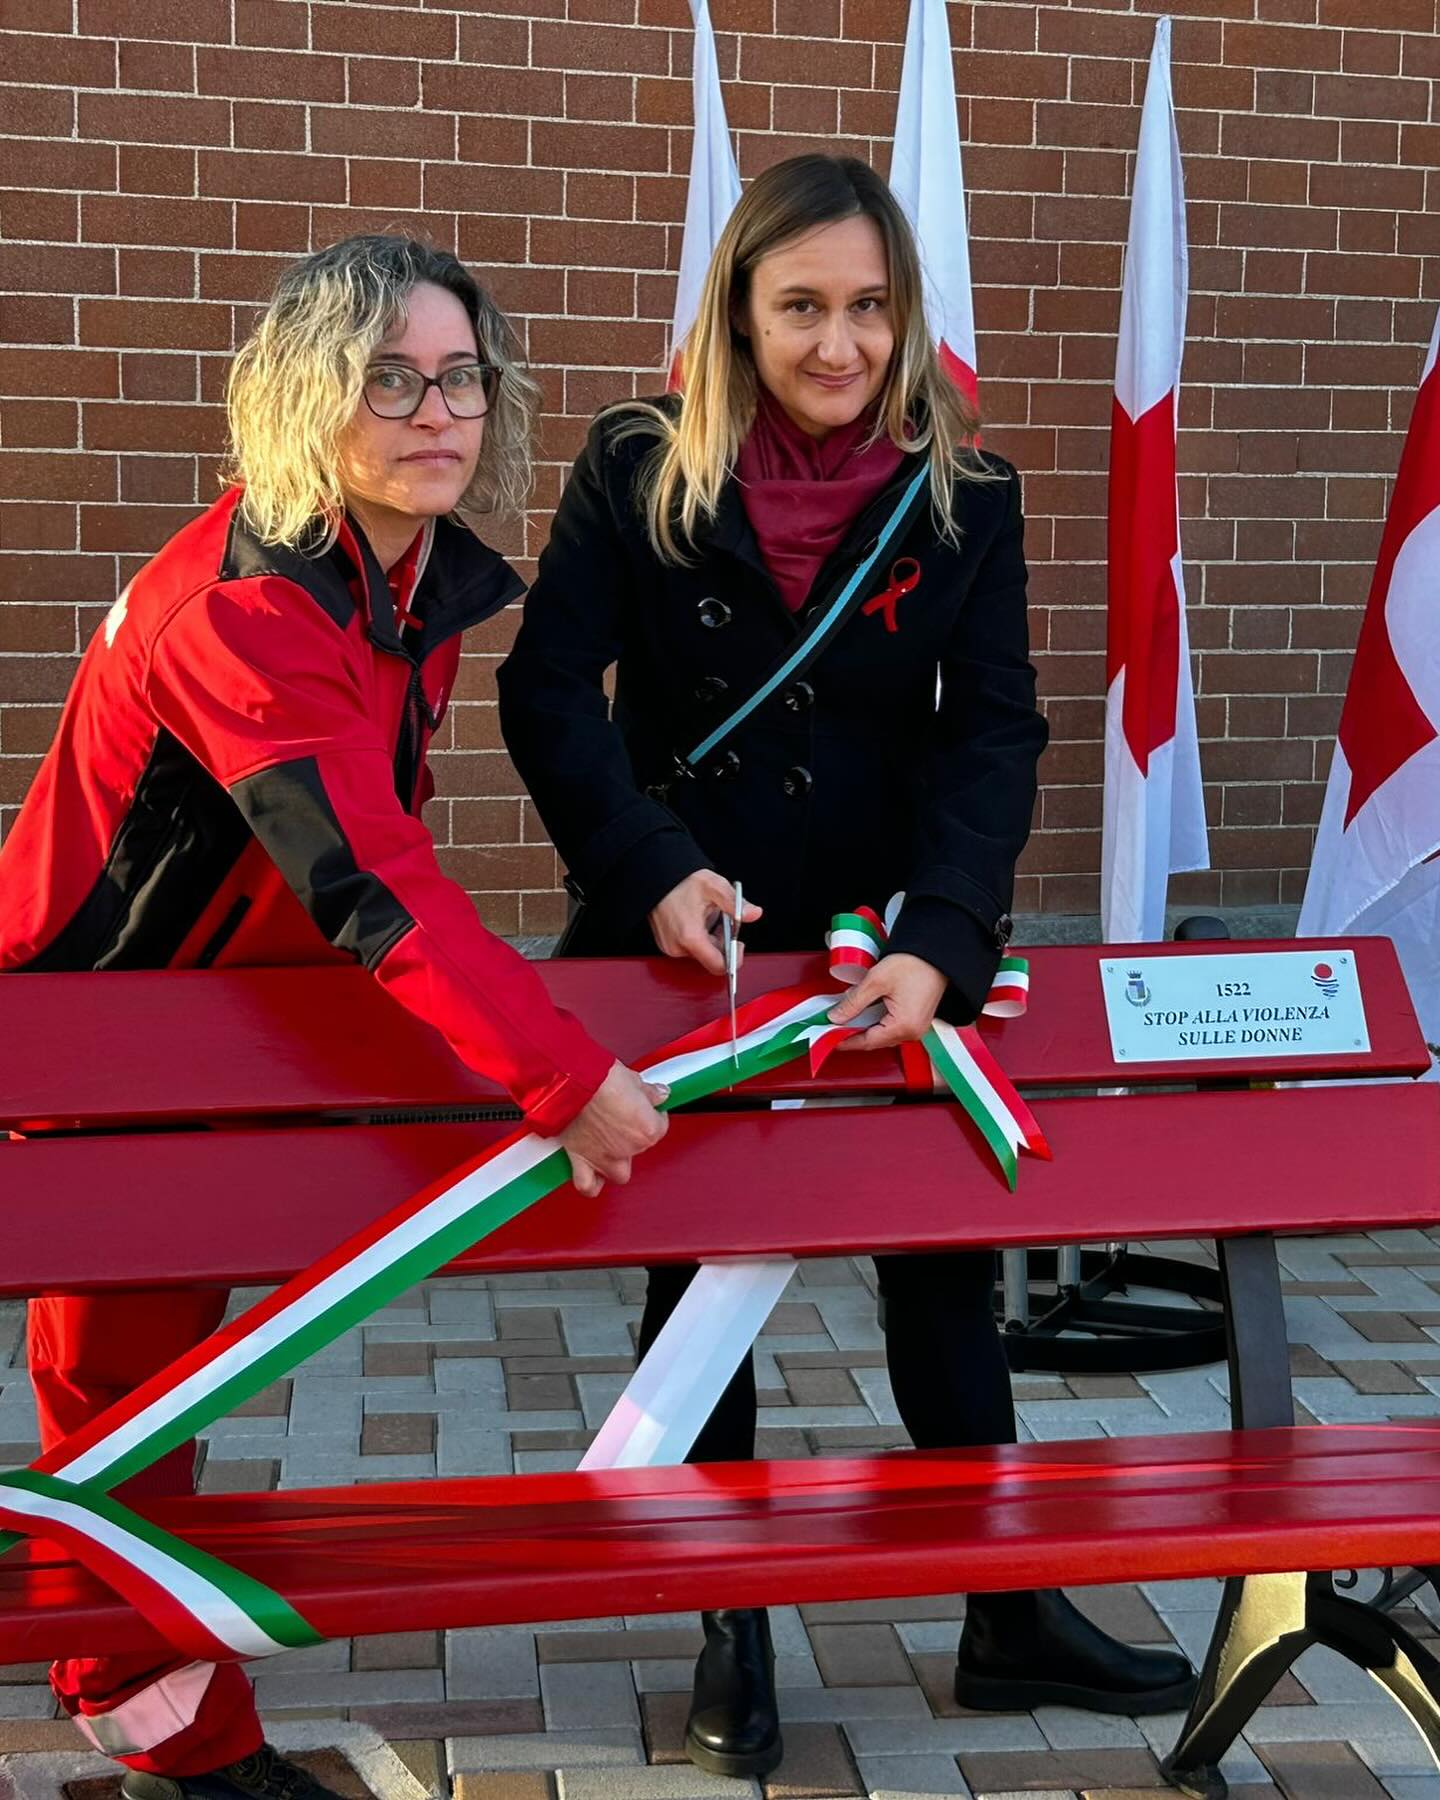 SANTENA – Inaugurata la panchina rossa alla Croce Rossa